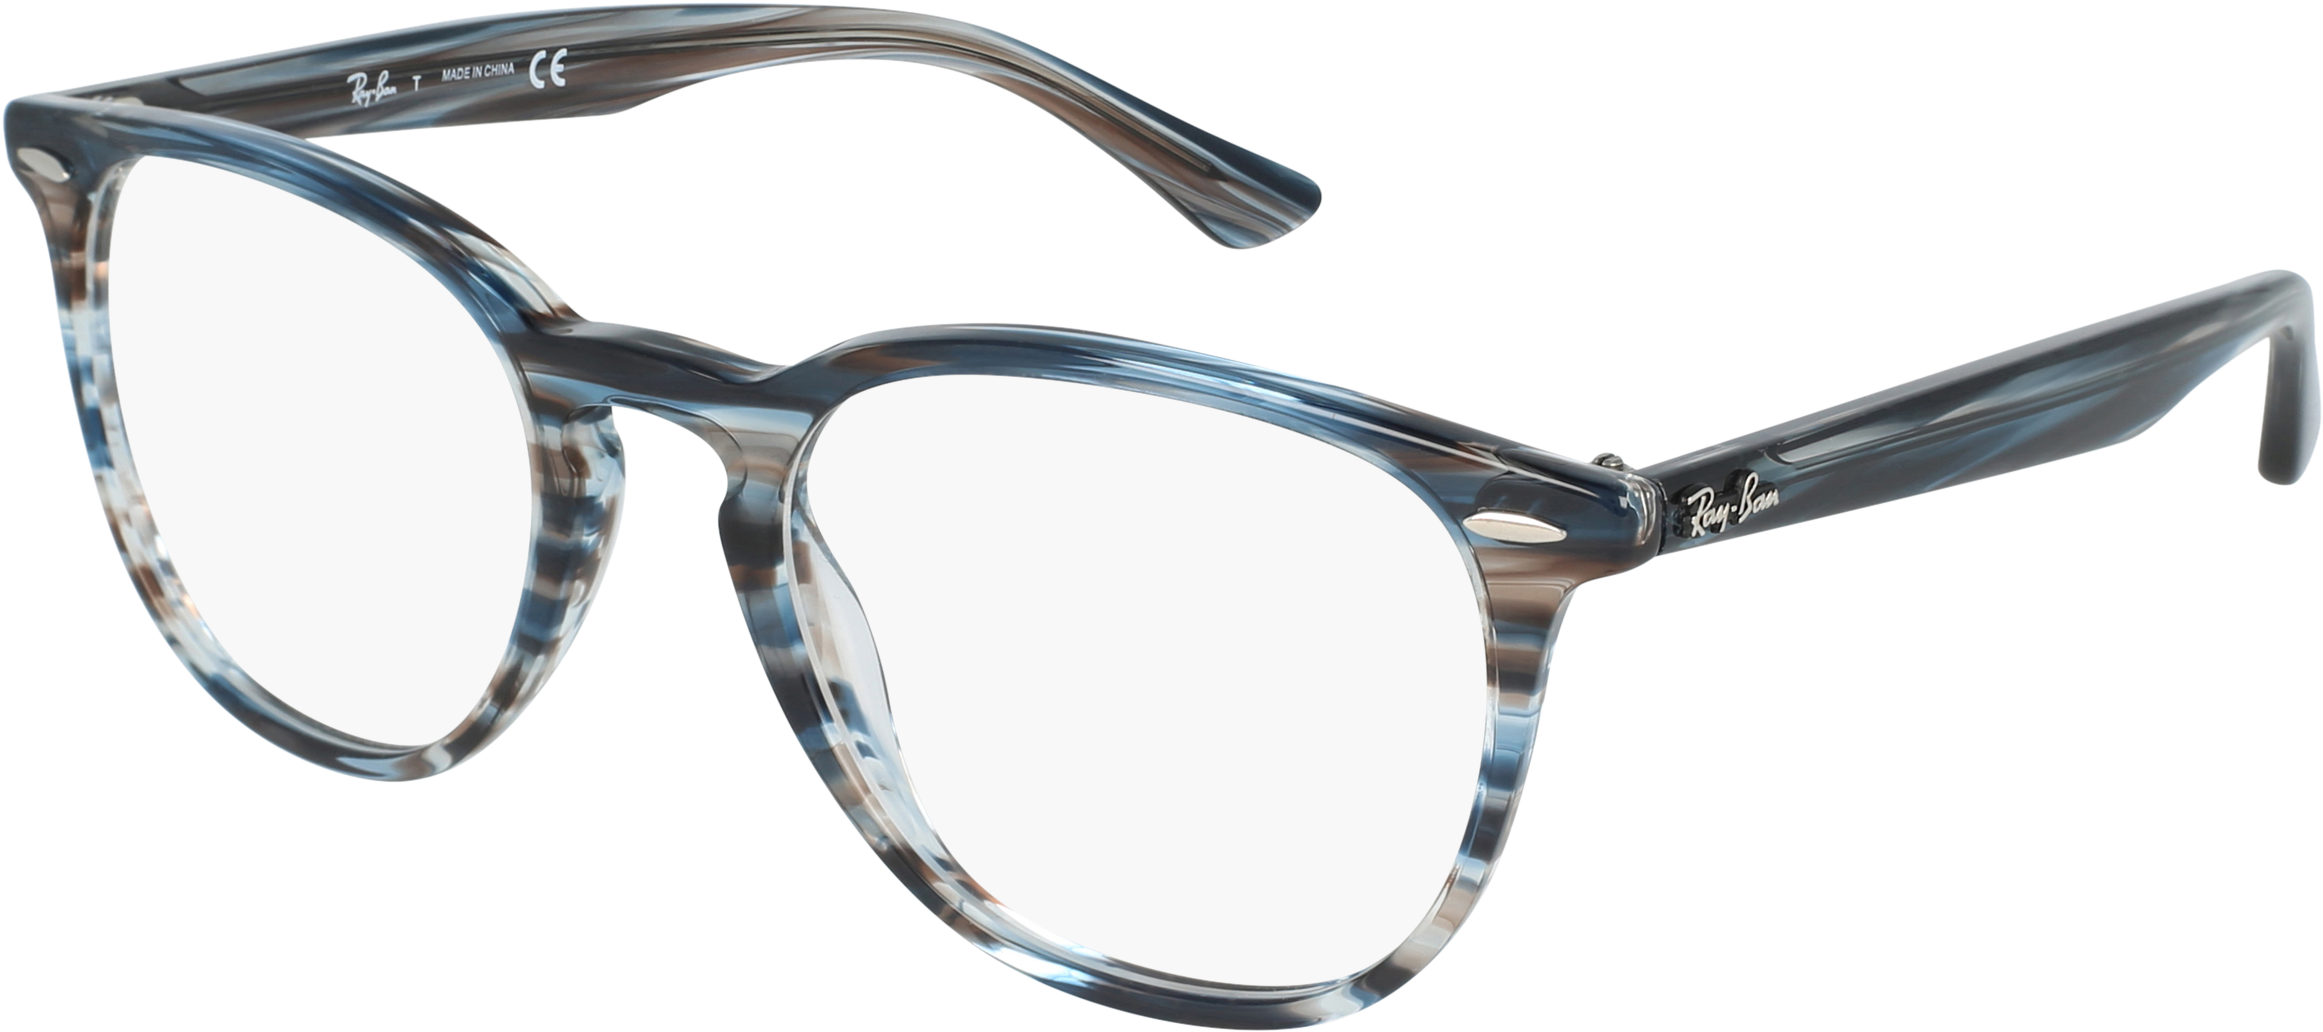 Designer Acetate Eyeglasses Transparent Frame